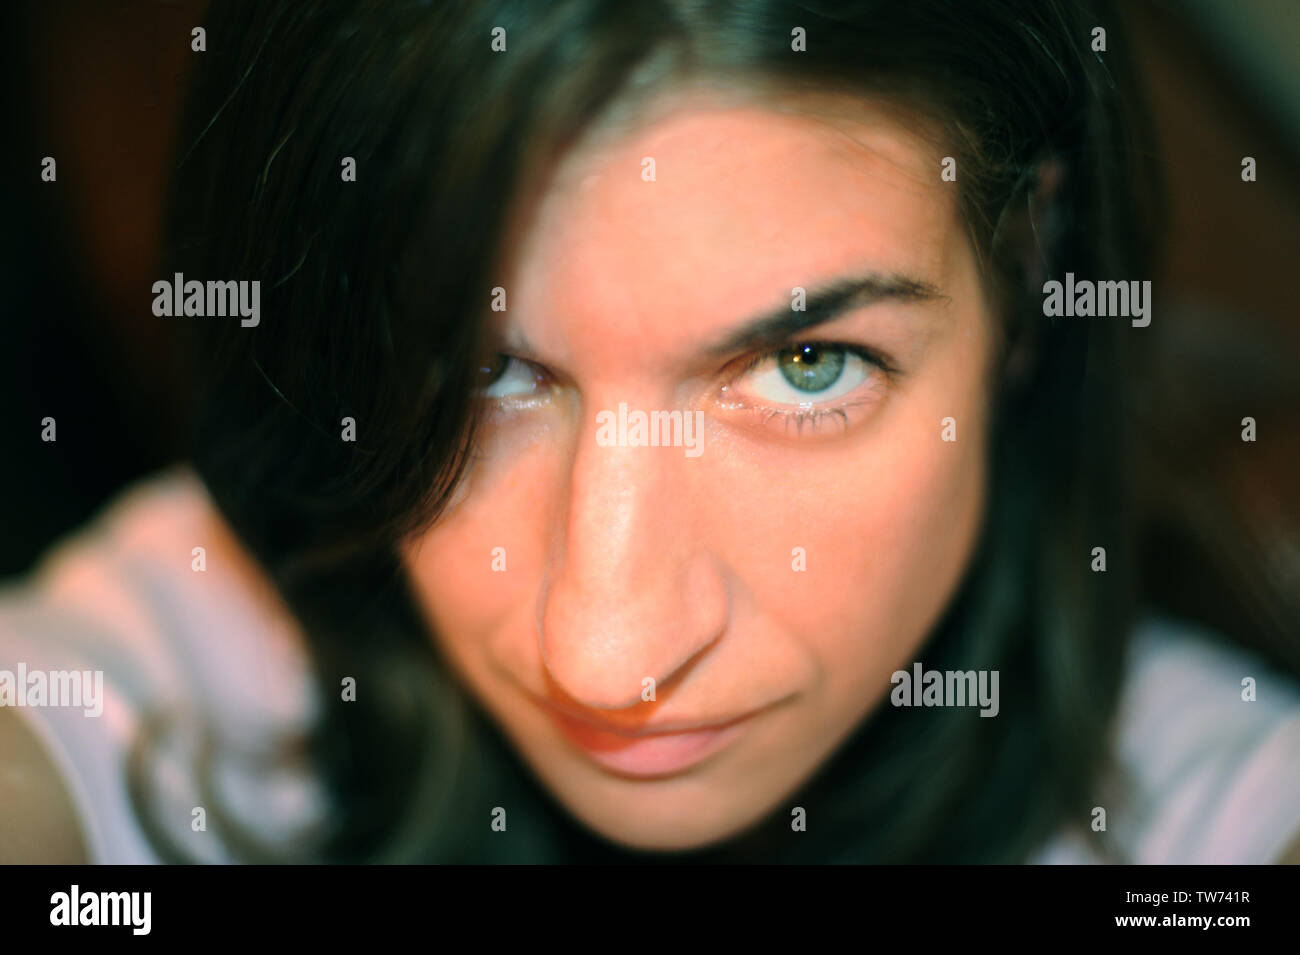 Un des selfies une femme aux yeux verts Banque D'Images